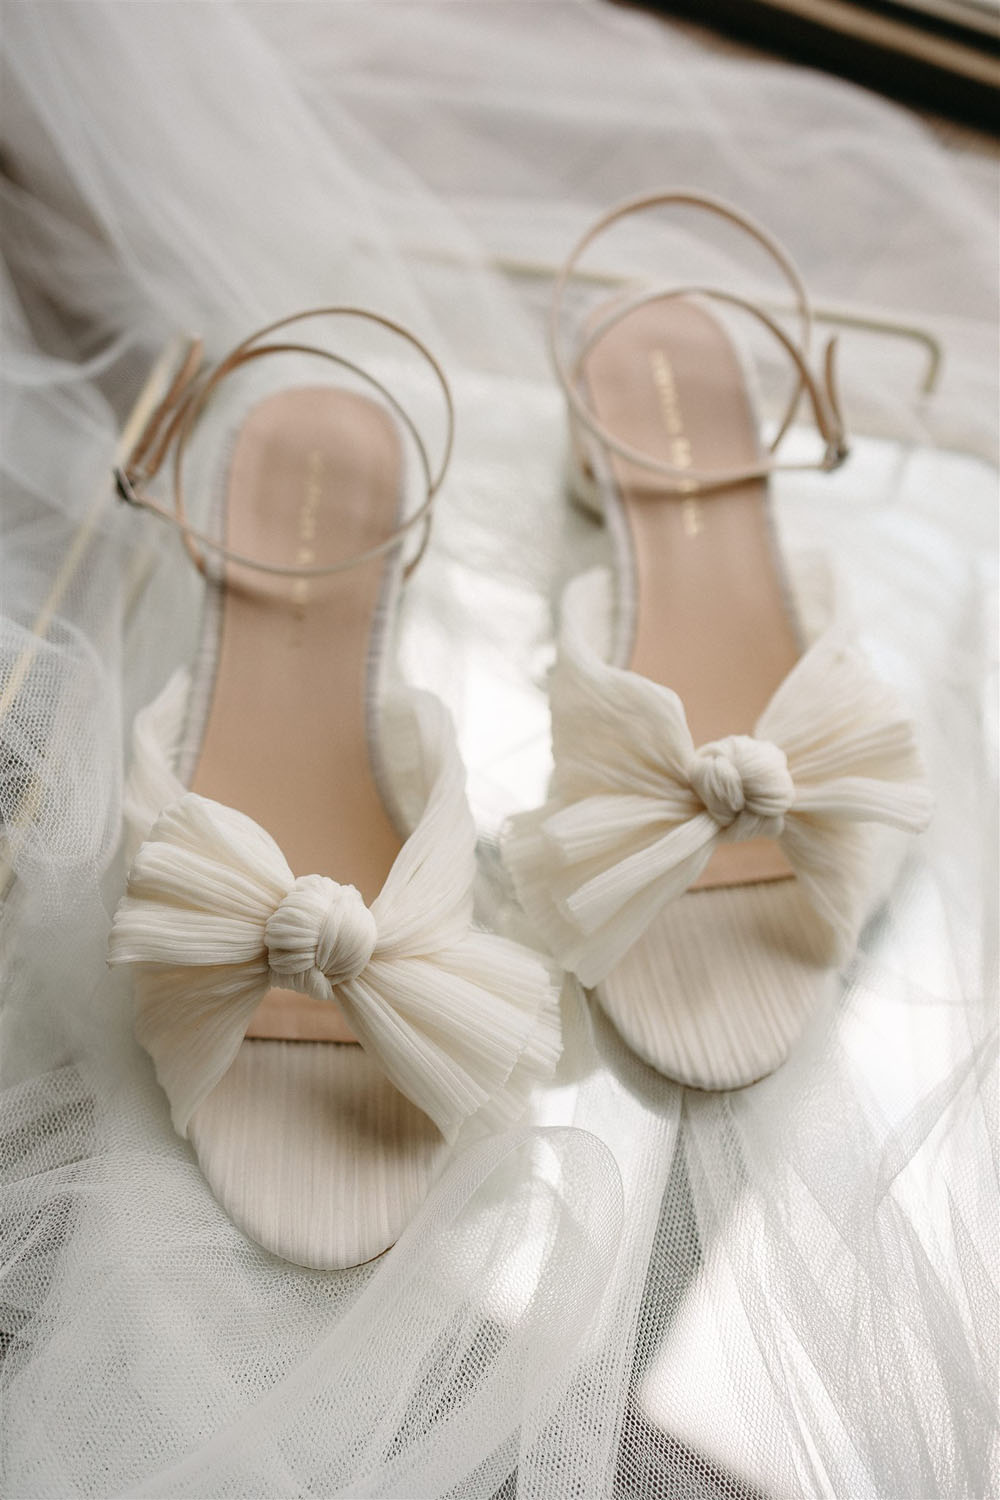 loeffler randall bridal shoes with bows